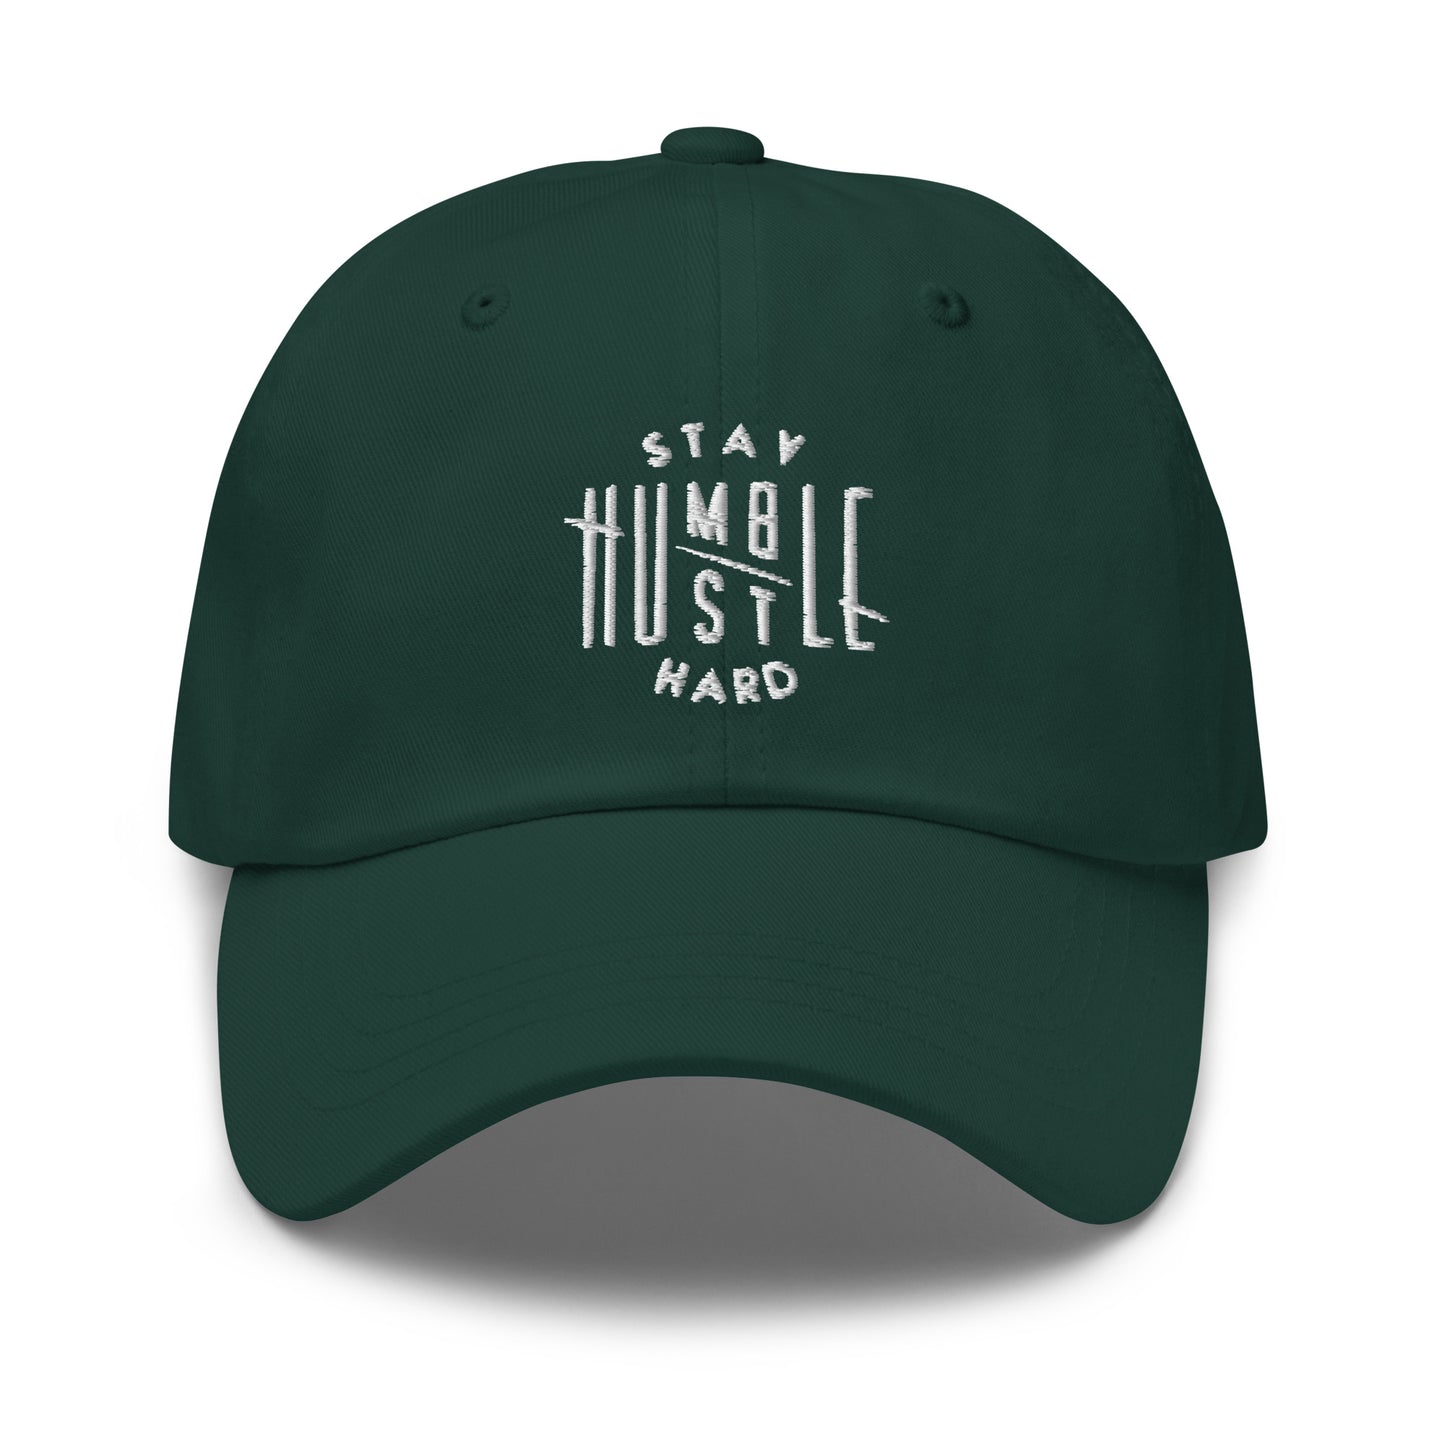 Hustle Hard Dad hat